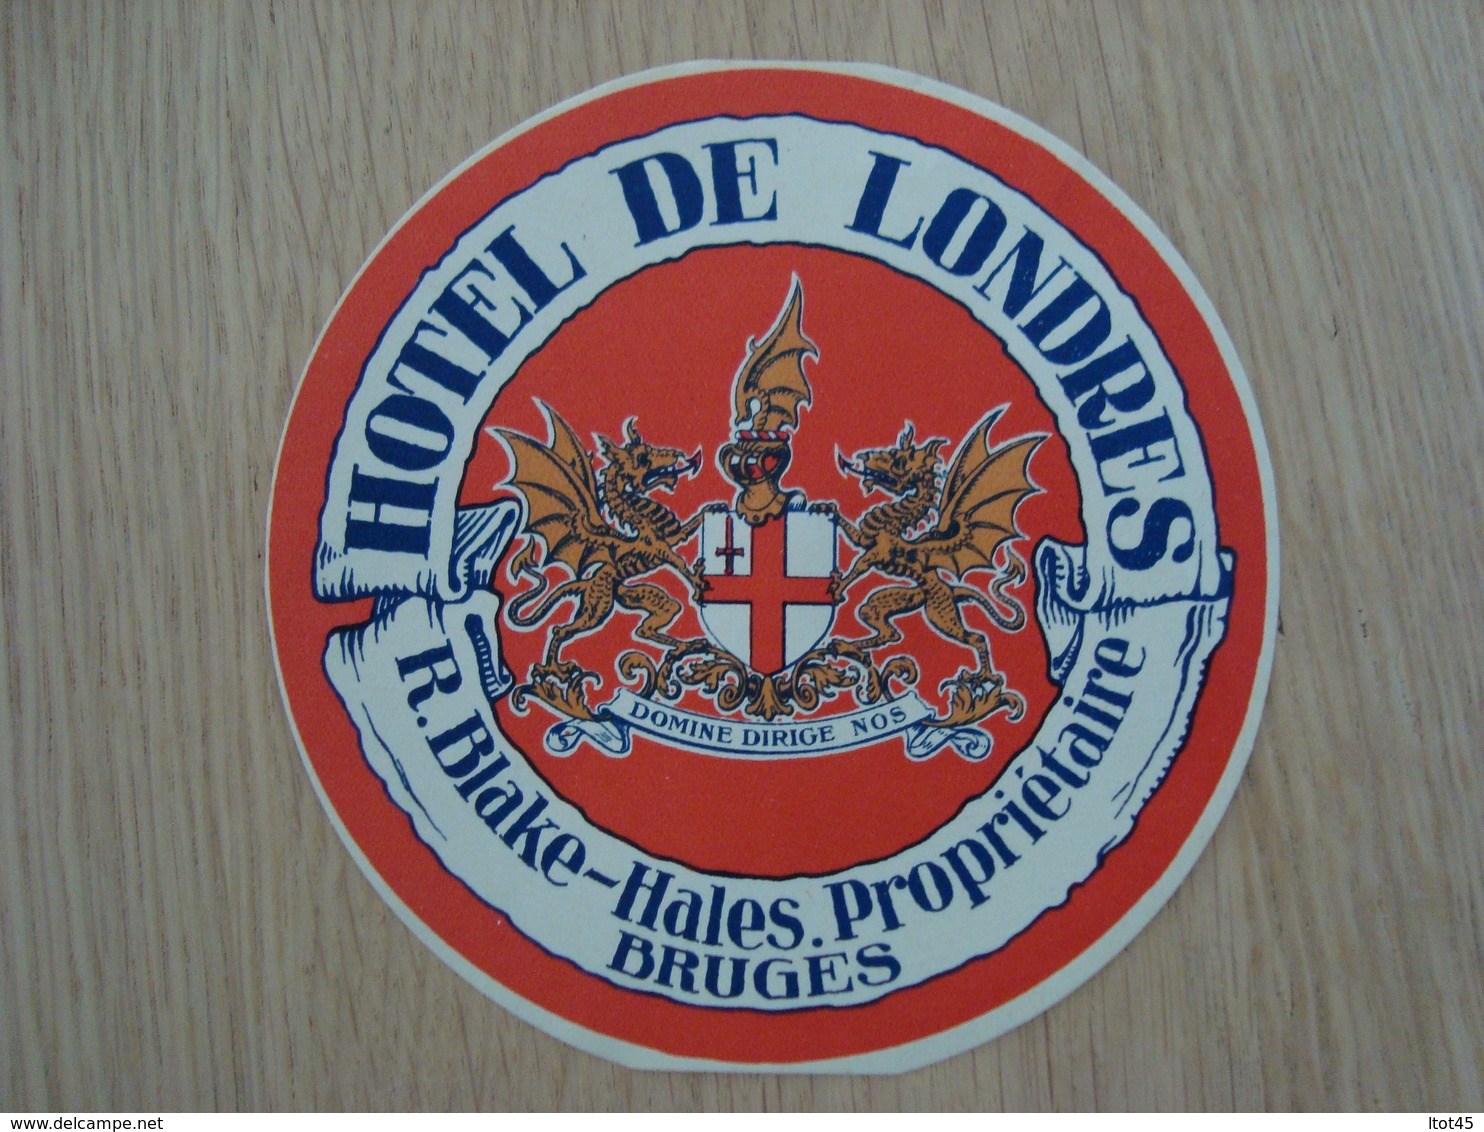 ETIQUETTE D'HOTEL DE LONDRES R.BLAKE BRUGES - Etiketten Van Hotels